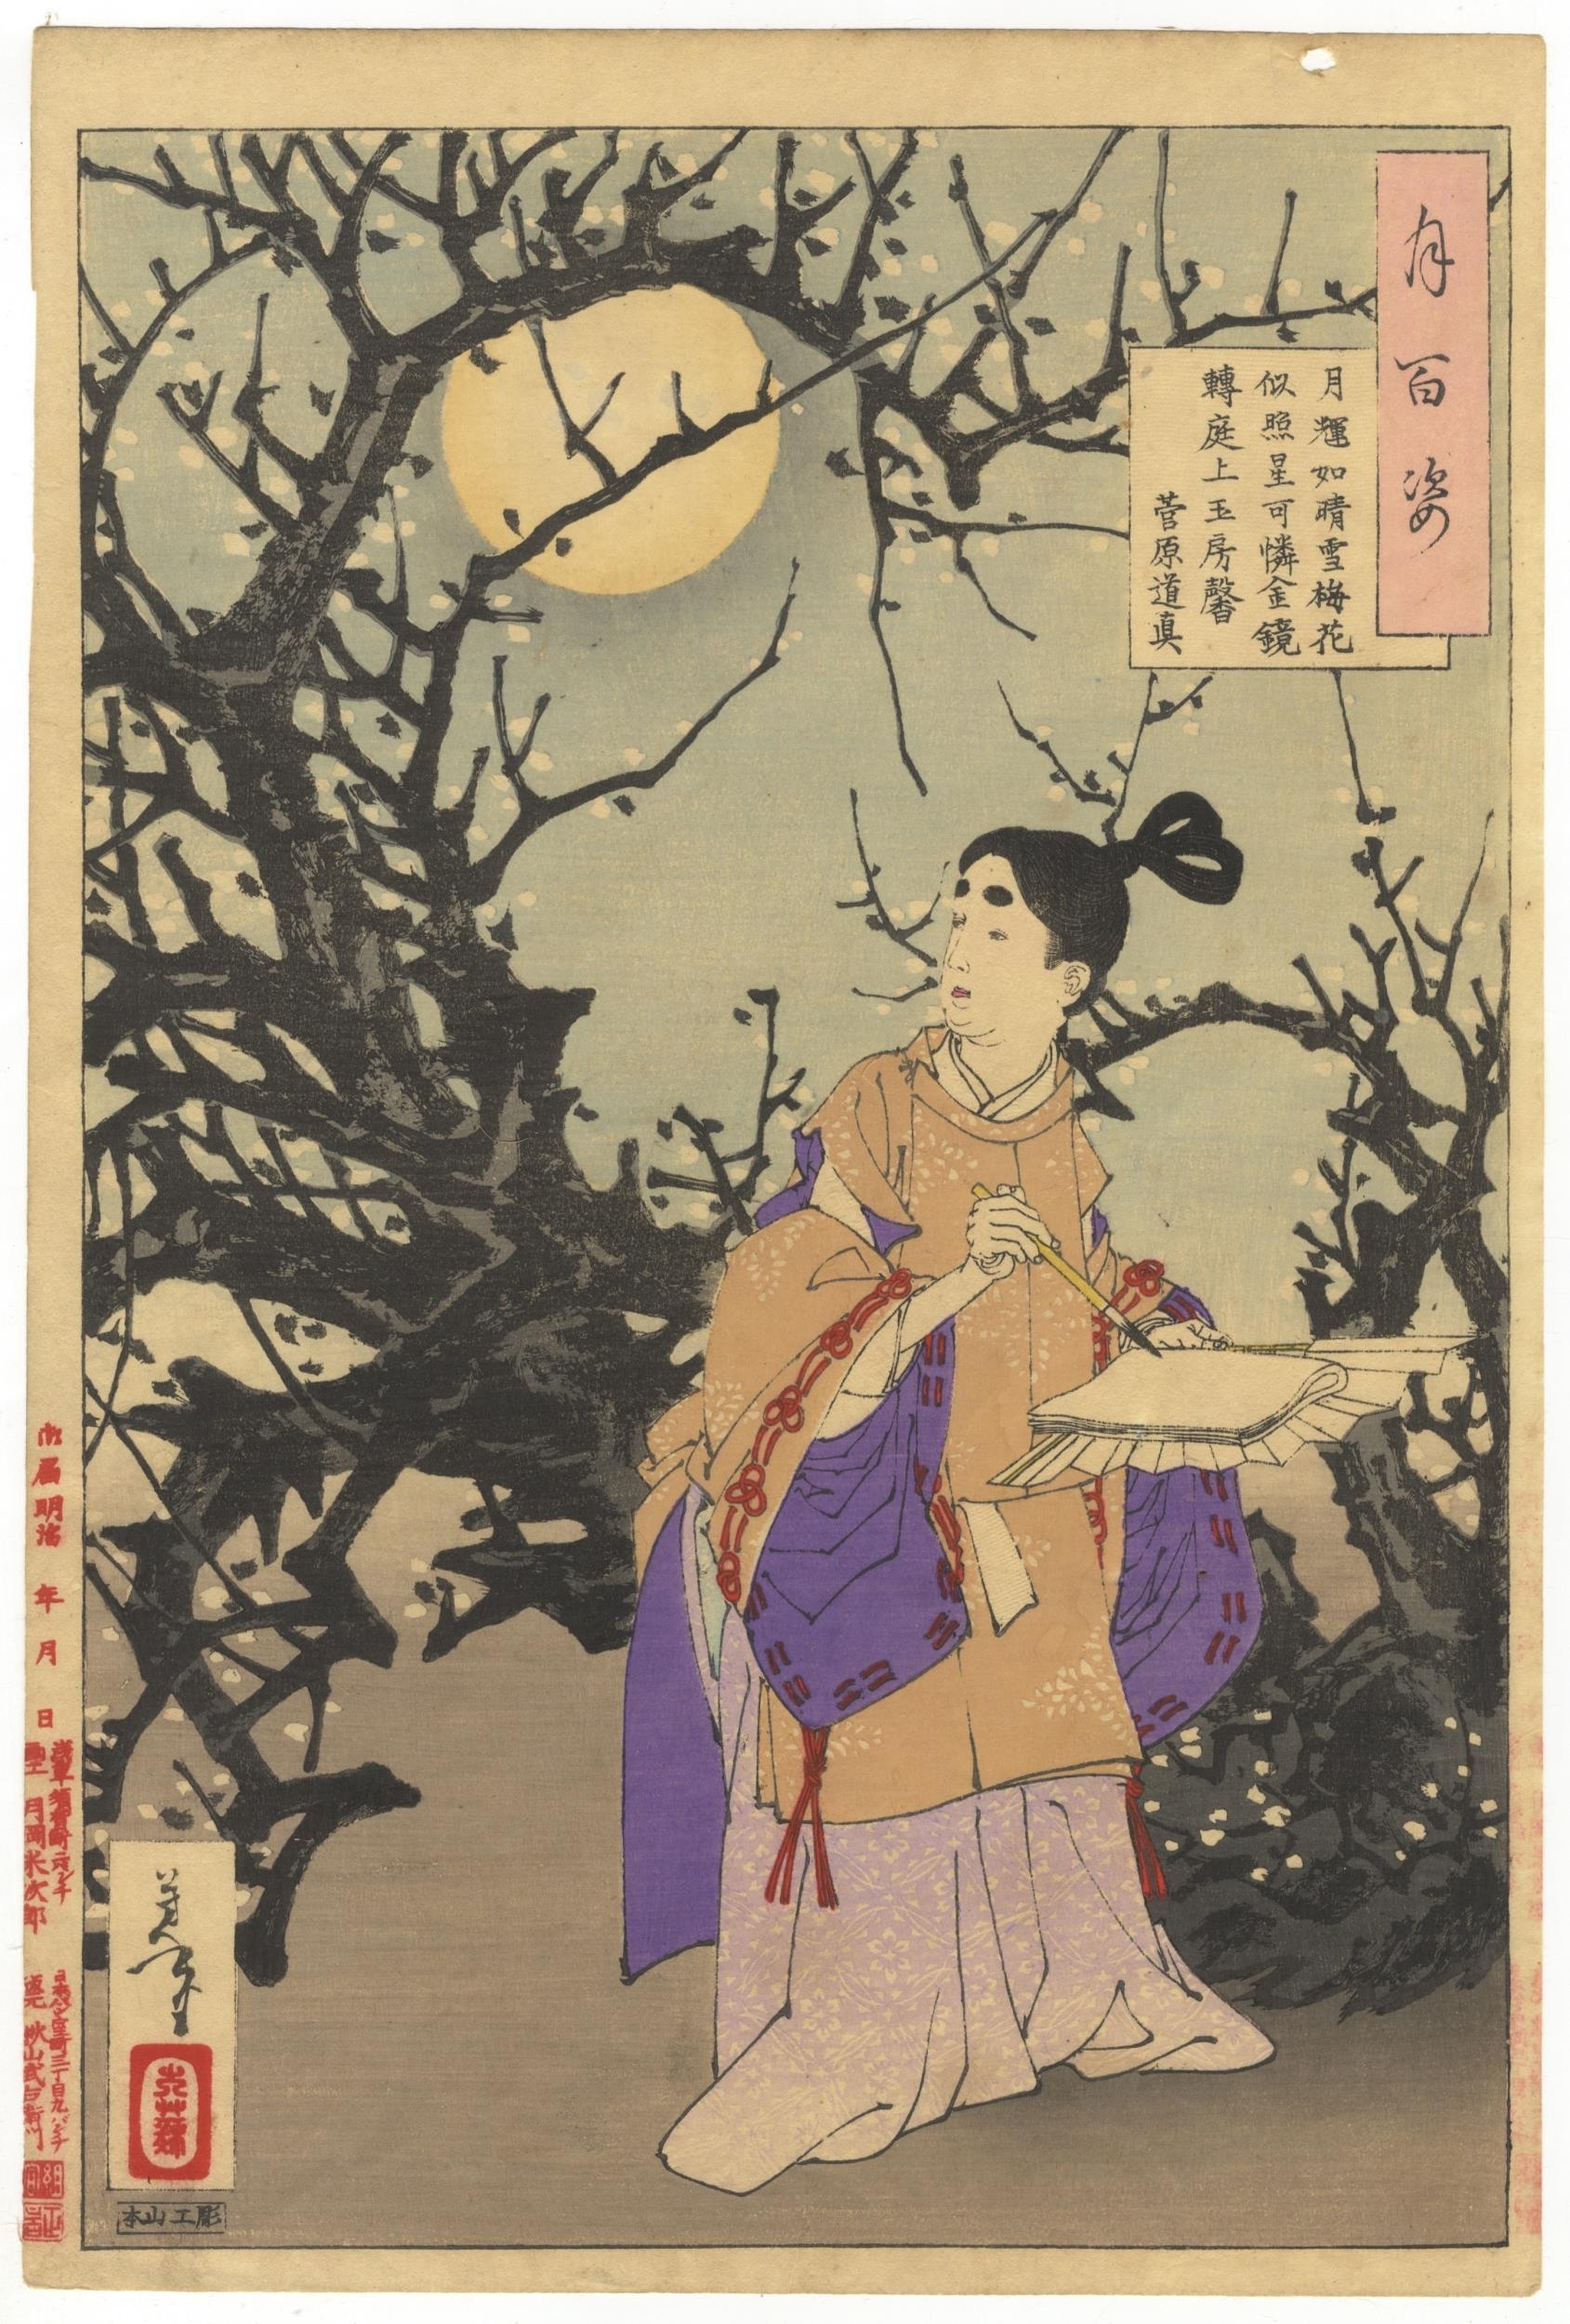 Sugawara no Michizane by Tsukioka Yoshitoshi, 1885-1892